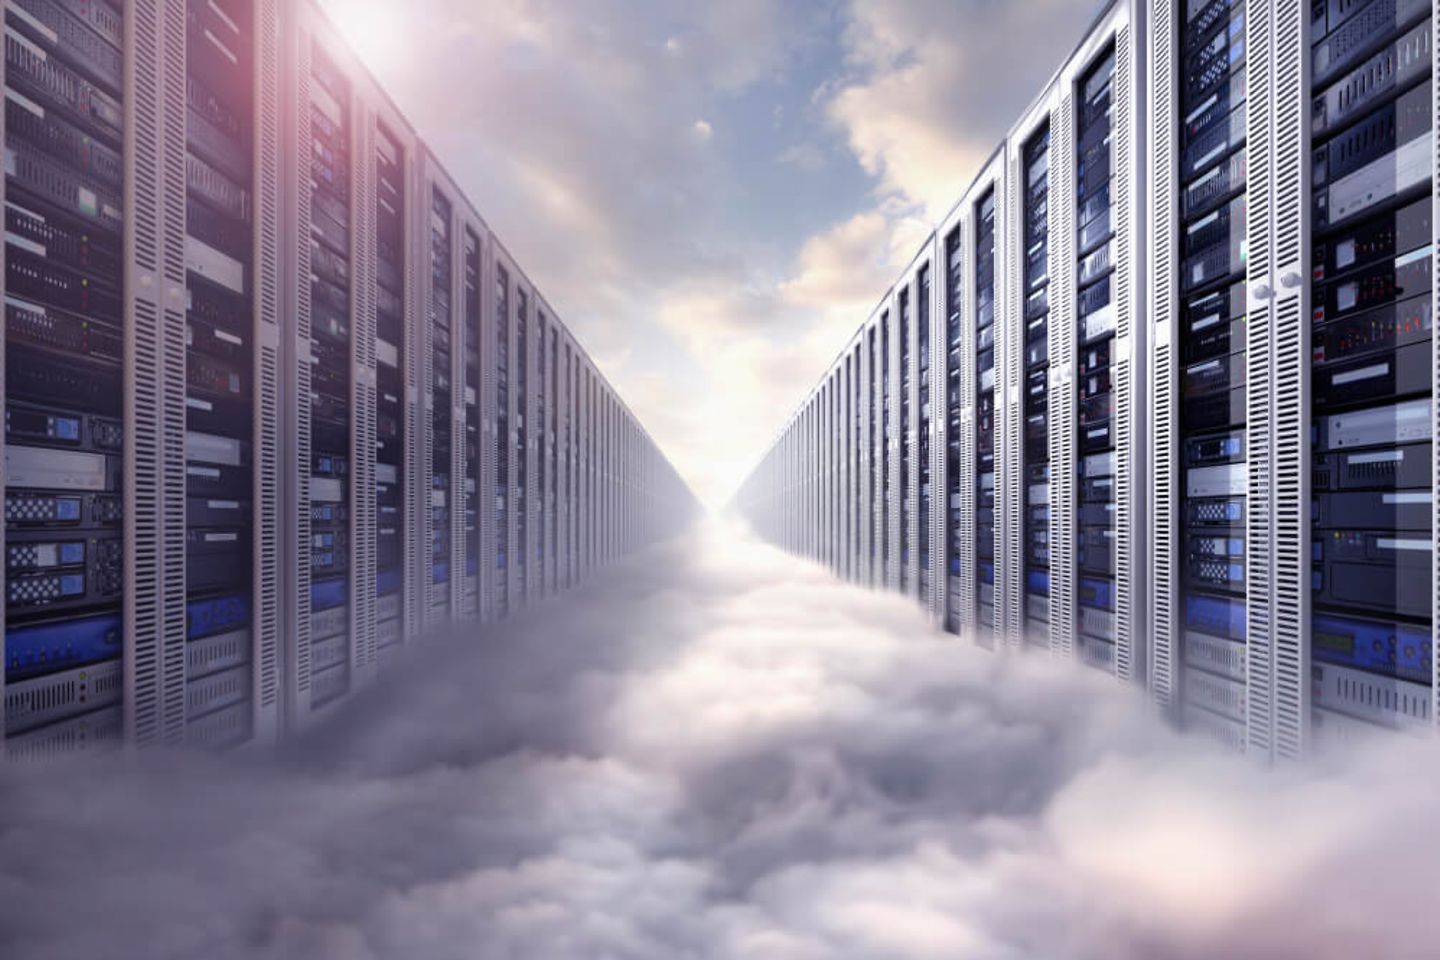 Composición de imágenes desde servidores informáticos y la nube